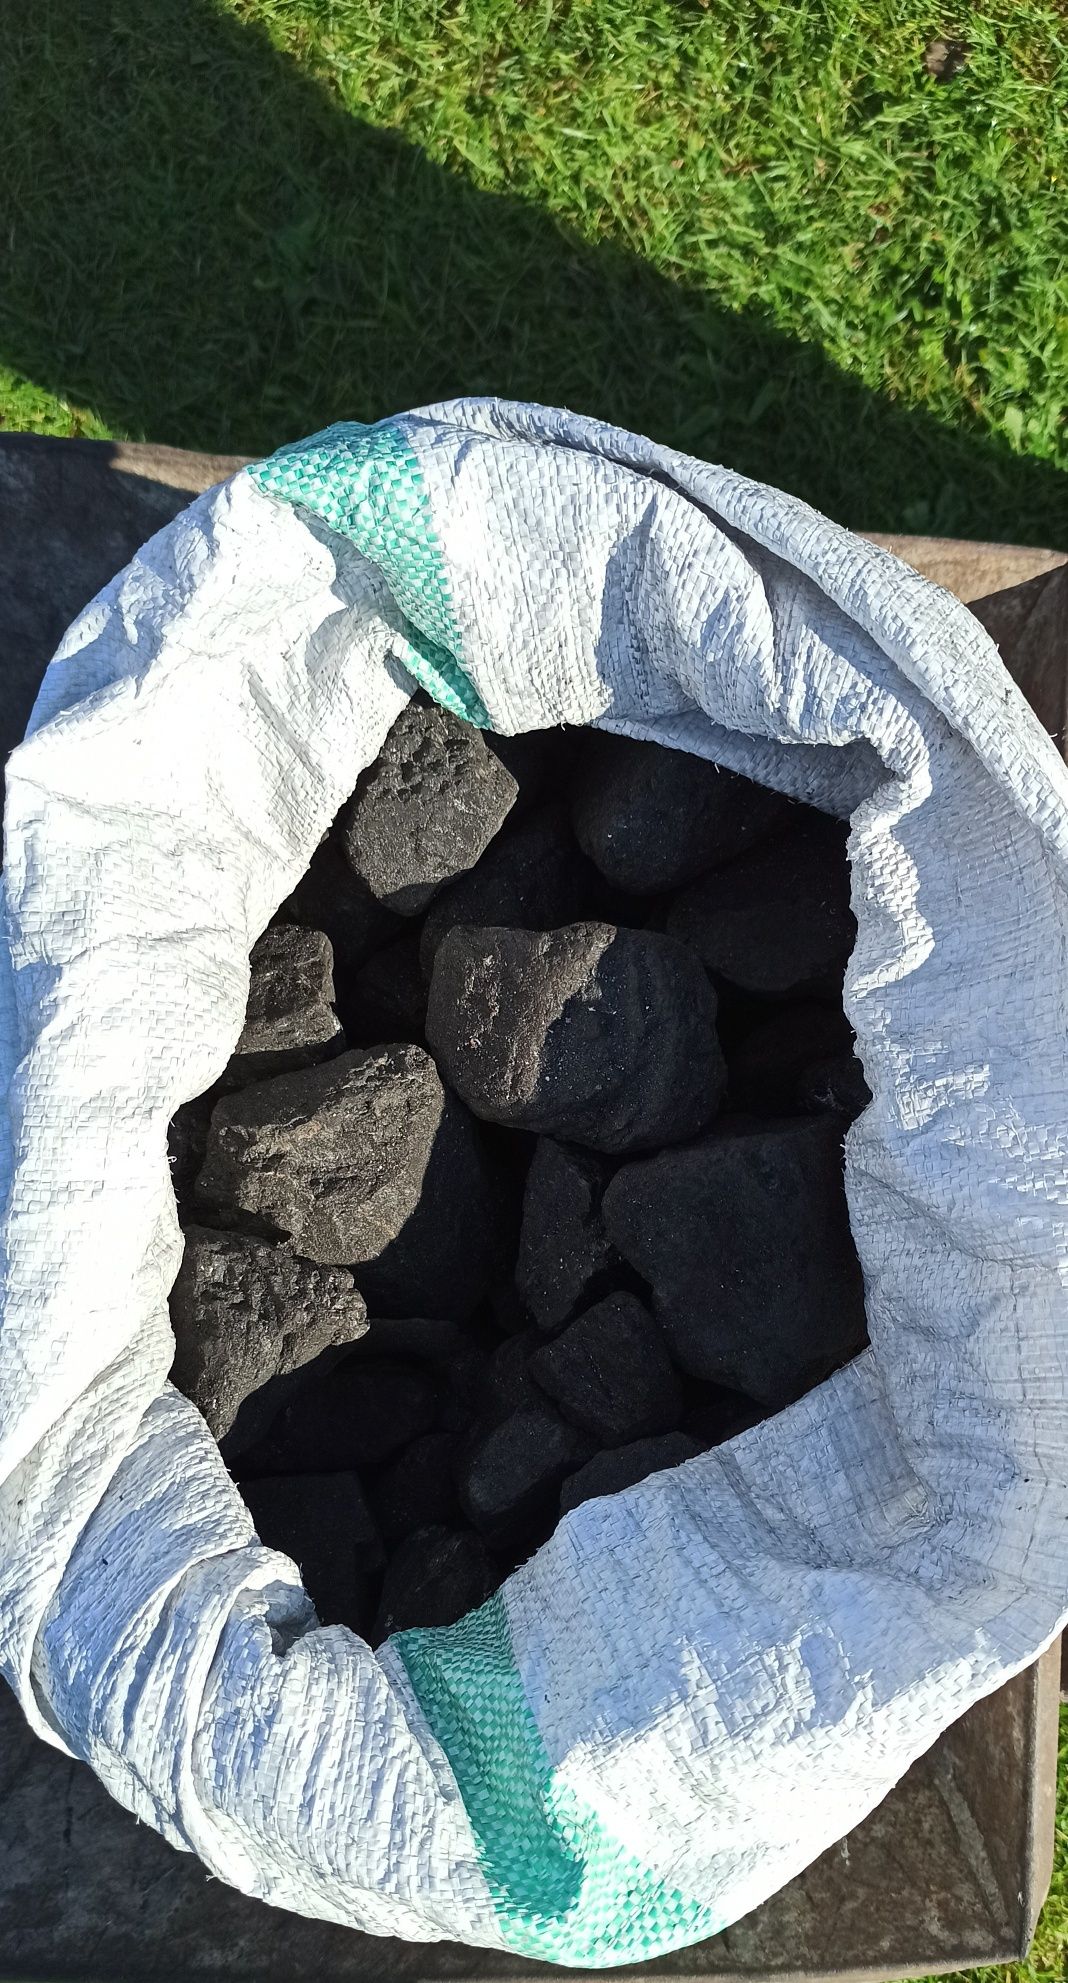 Węgiel kamienny gruby bez miału 1350zł tonę